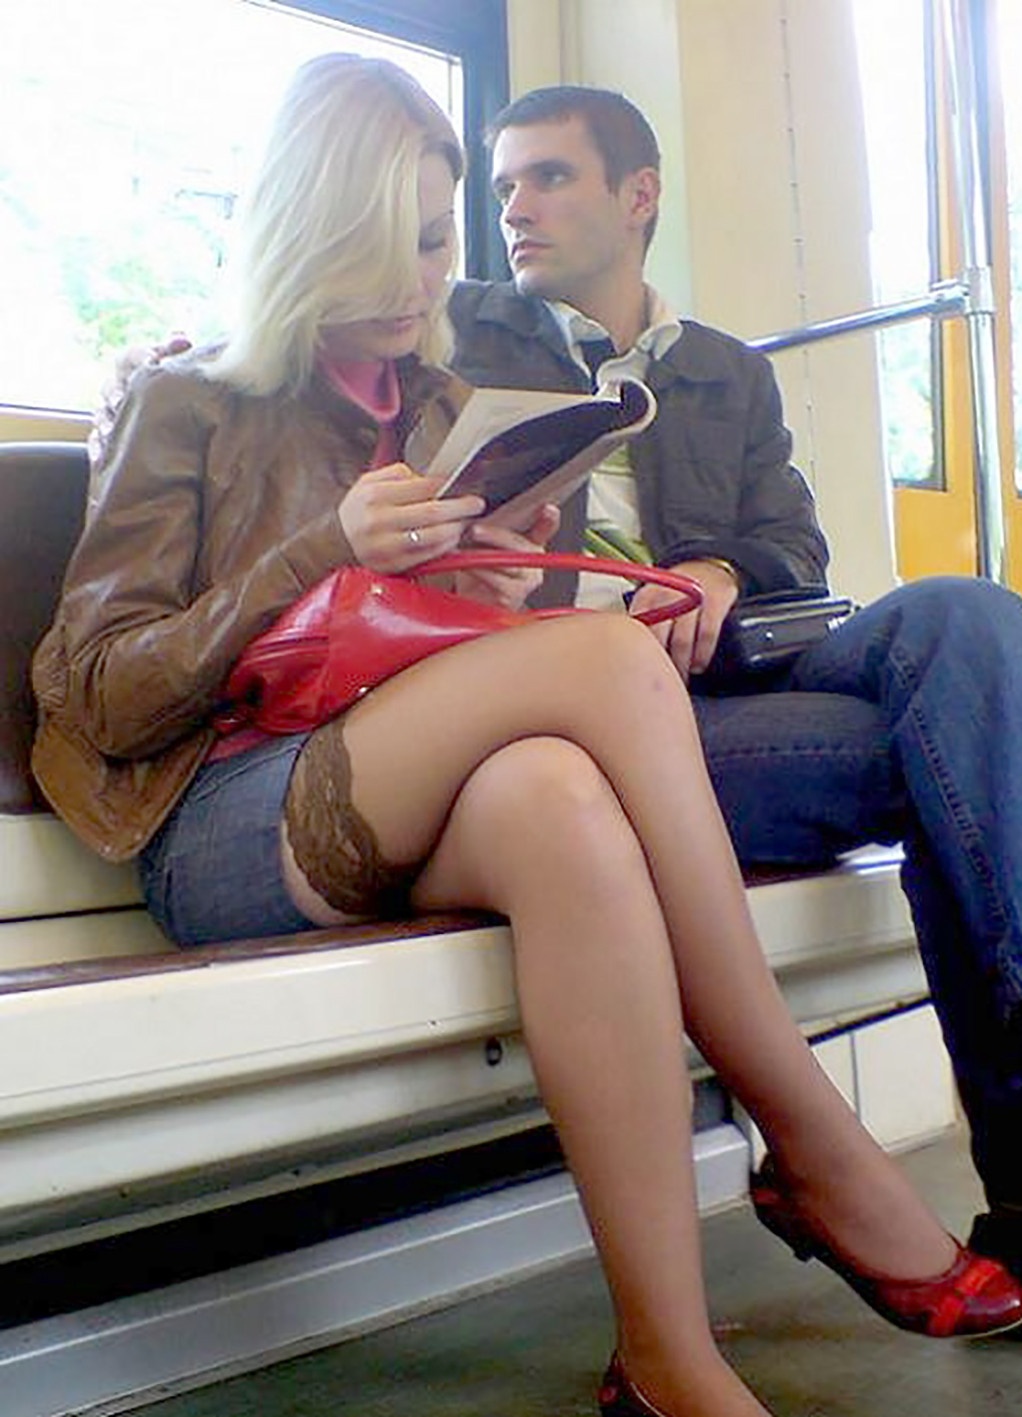 Трусики под юбкой у девушки в метро (64 фото)